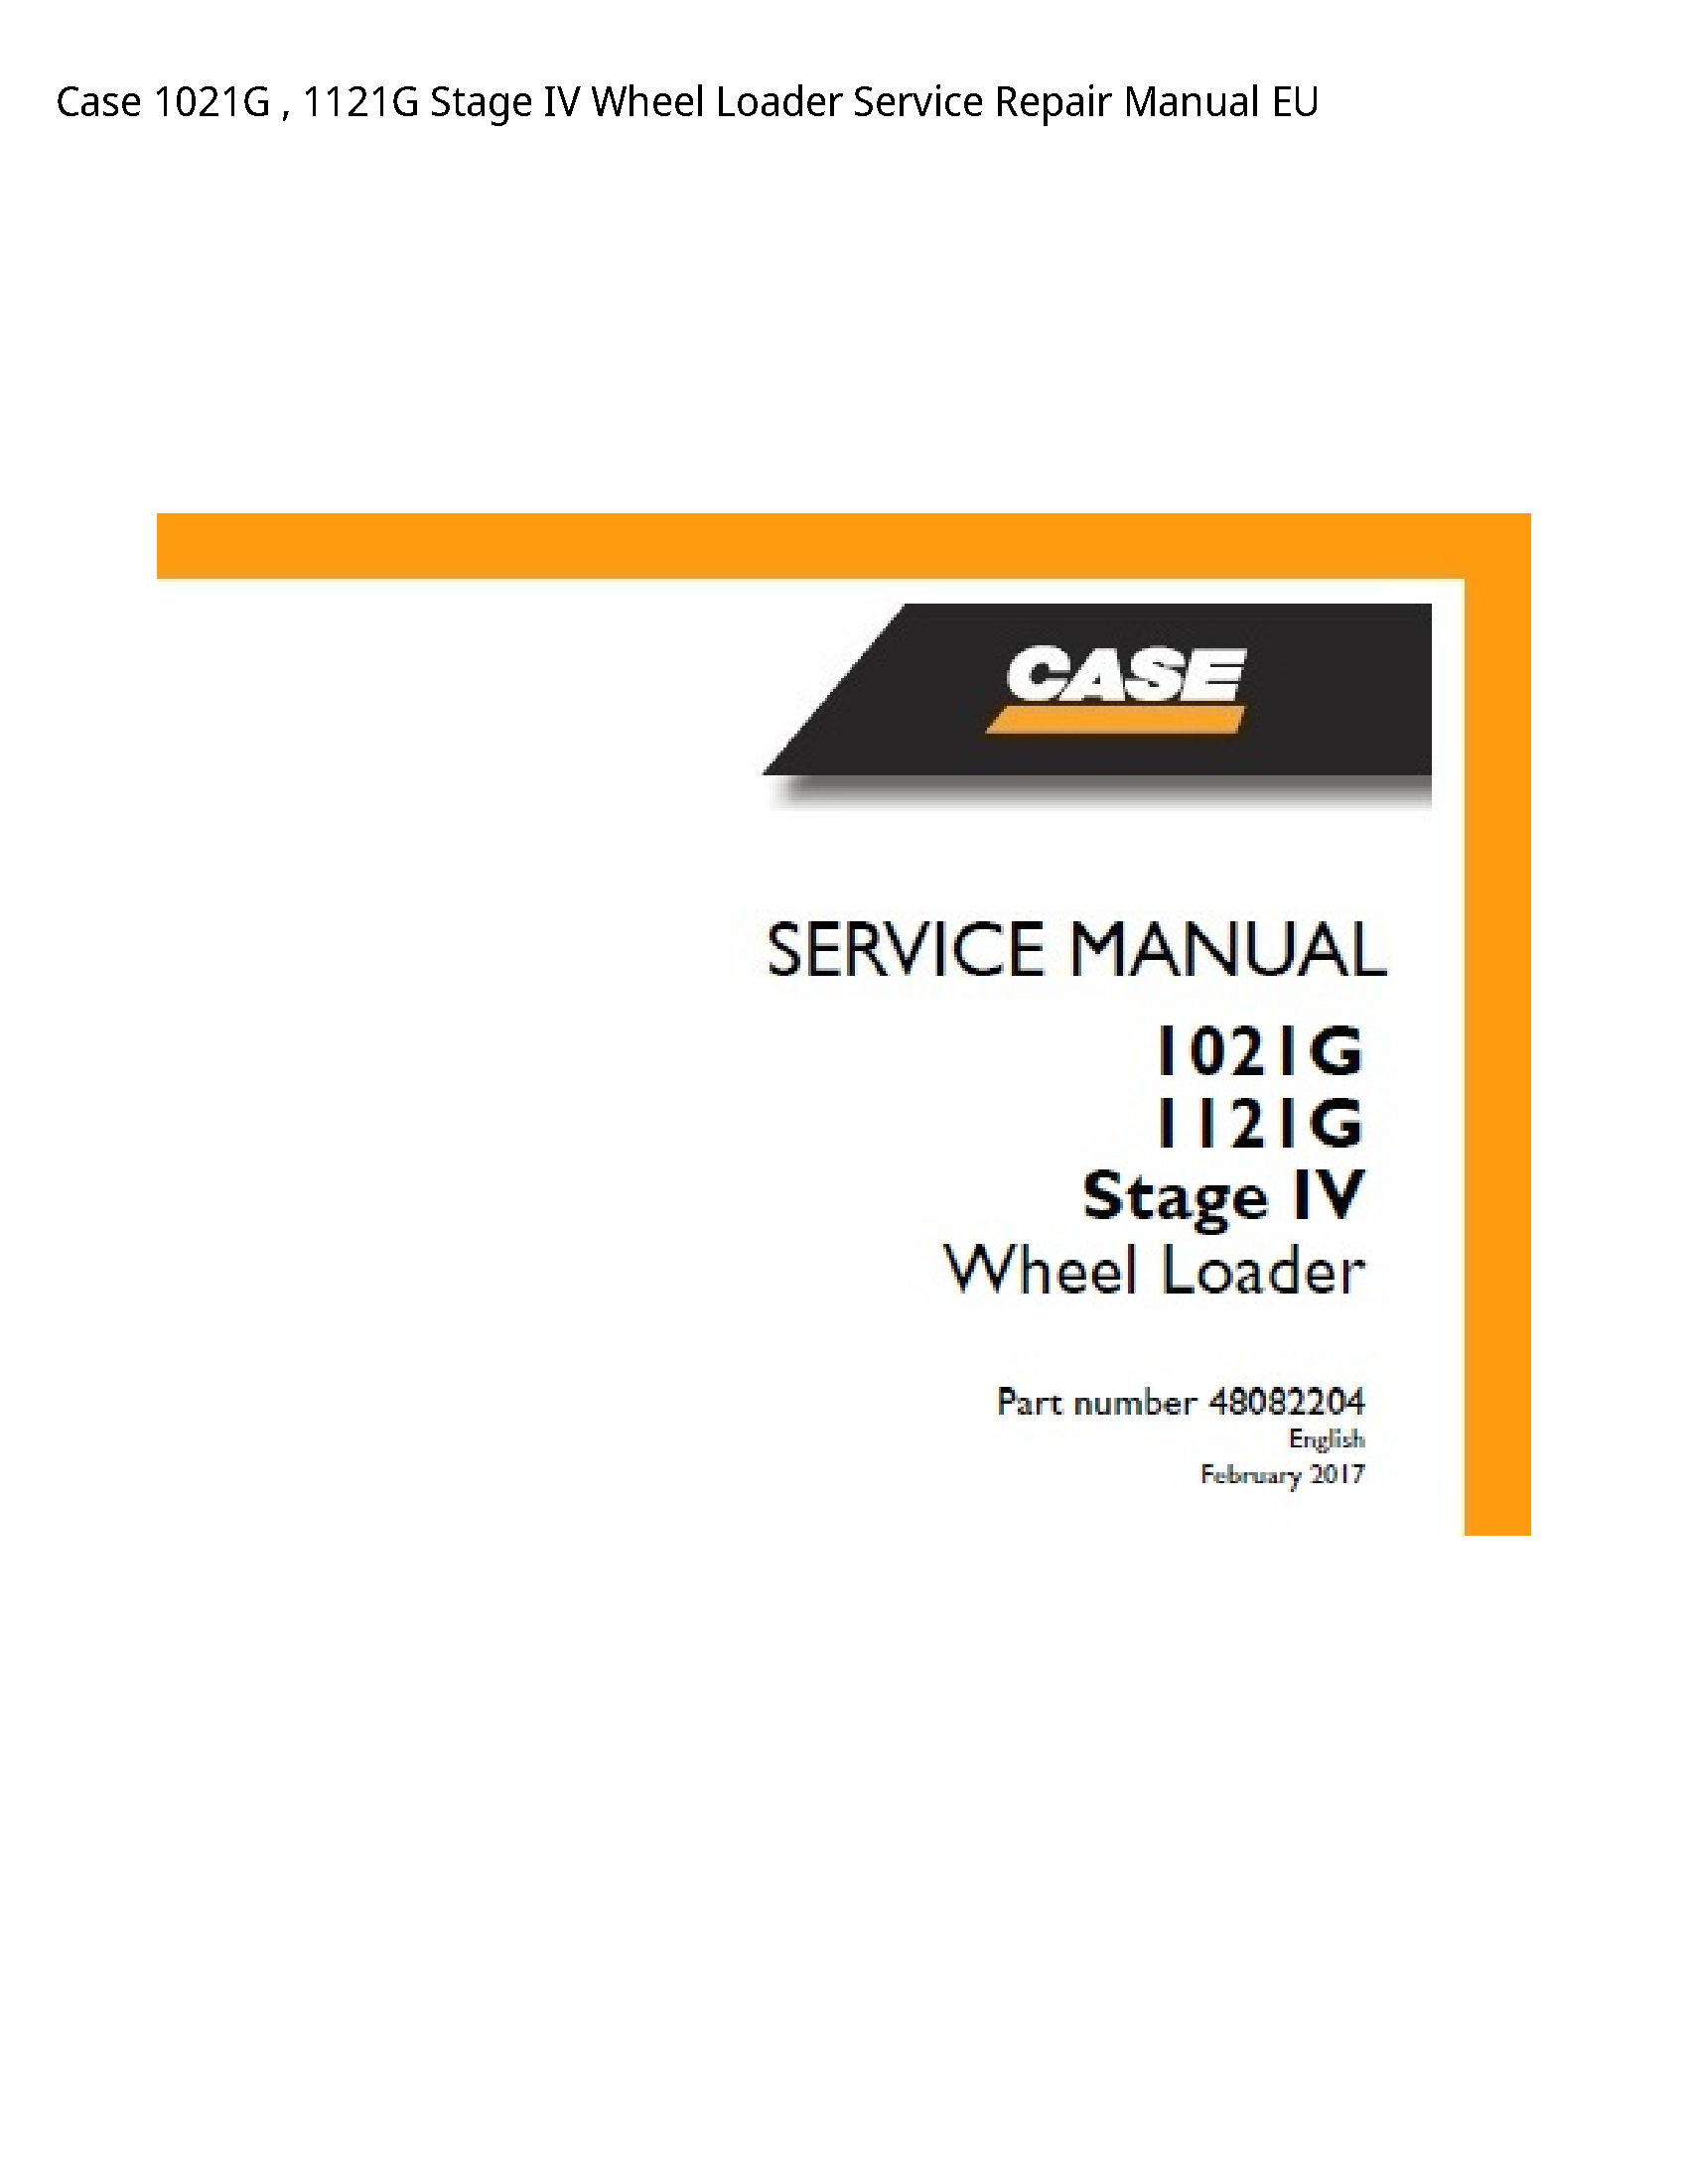 Case/Case IH 1021G Stage IV Wheel Loader manual